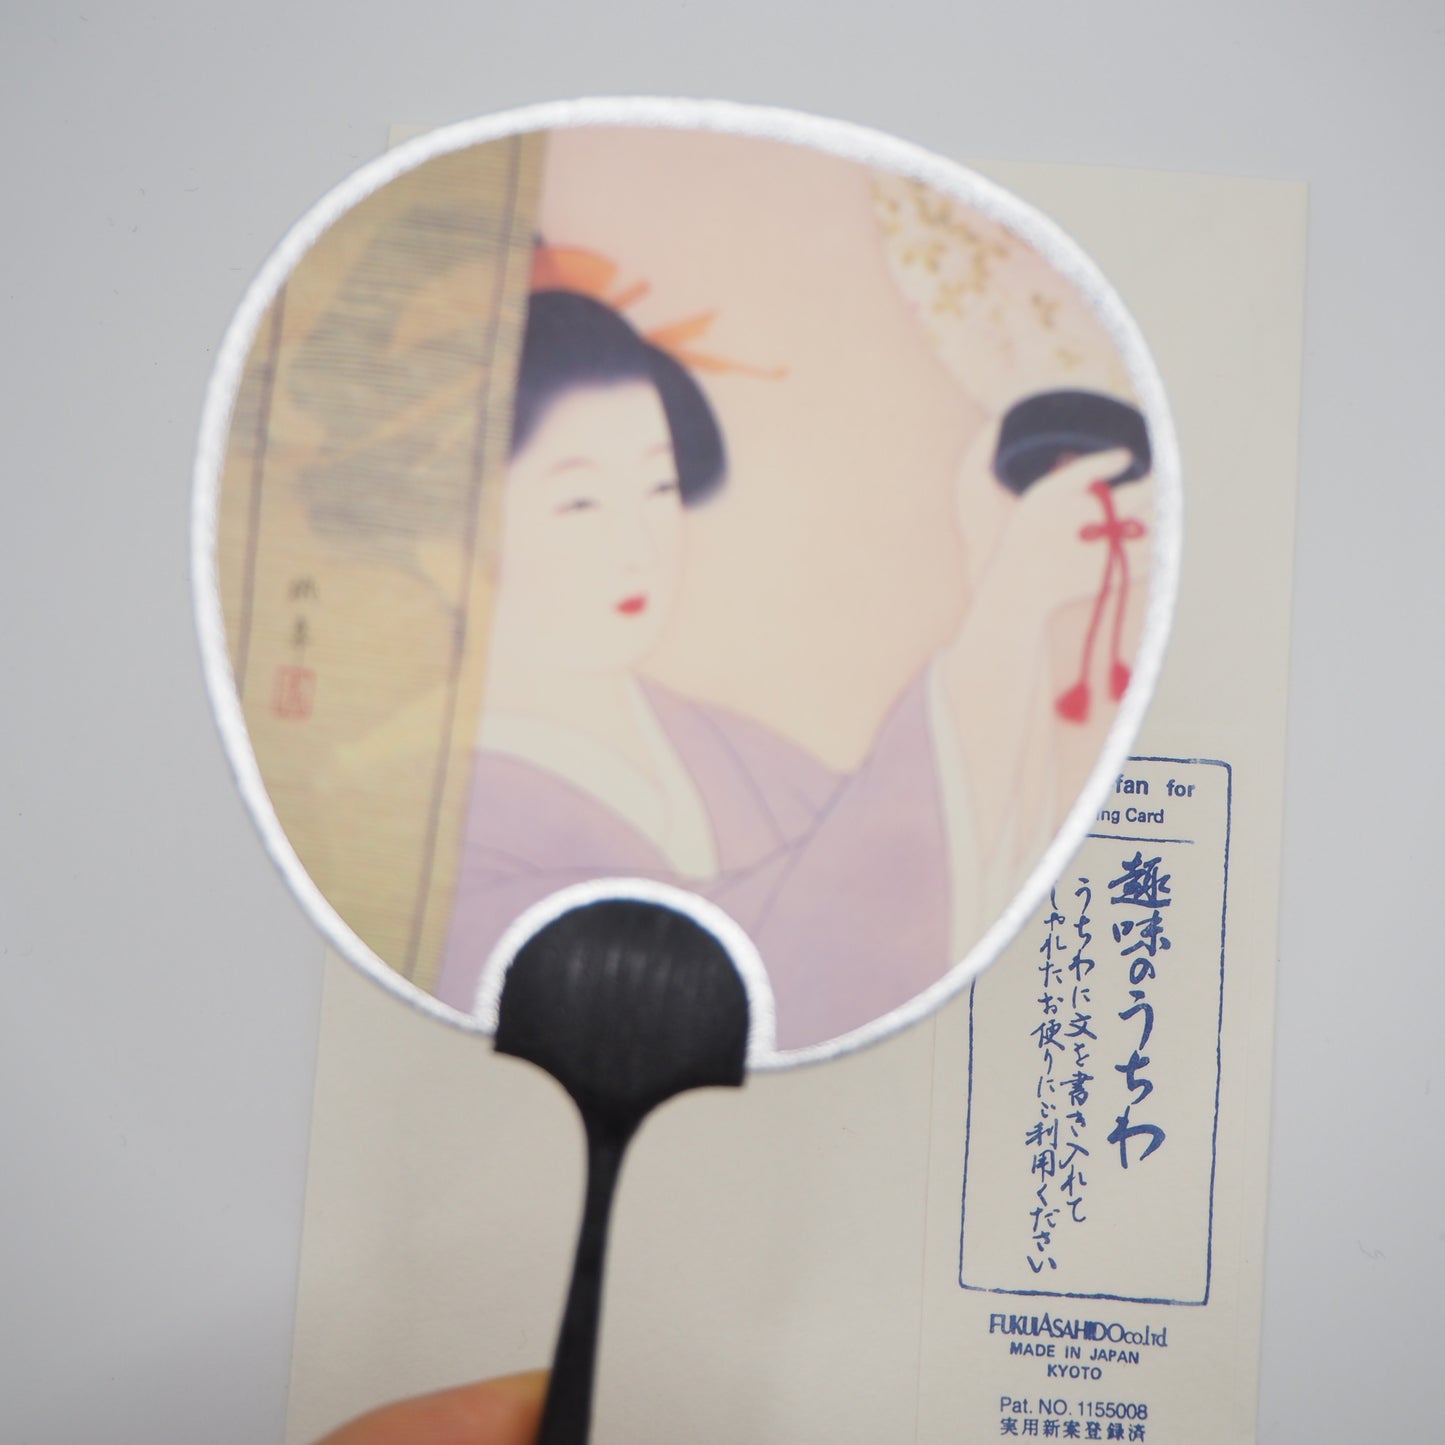 Small Uchiwa Fan Greeting Card -Lady with lantern